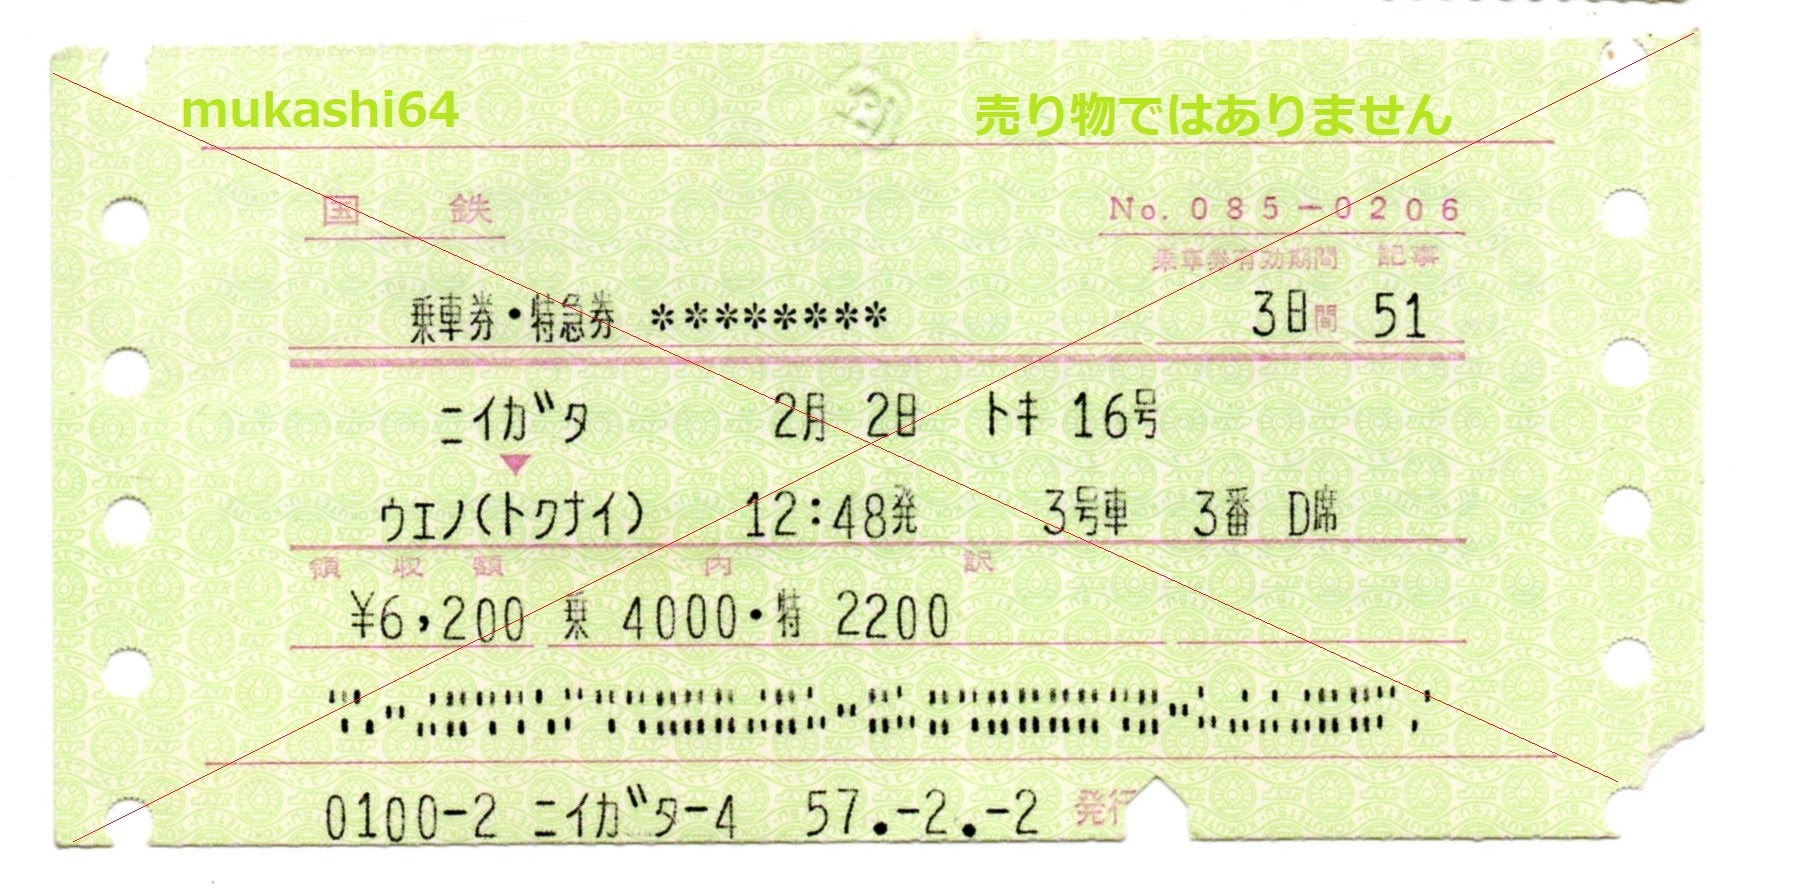 切符で見る 国鉄・JR 特急列車 特別な急行だった時代④ 各種昼行特急券 